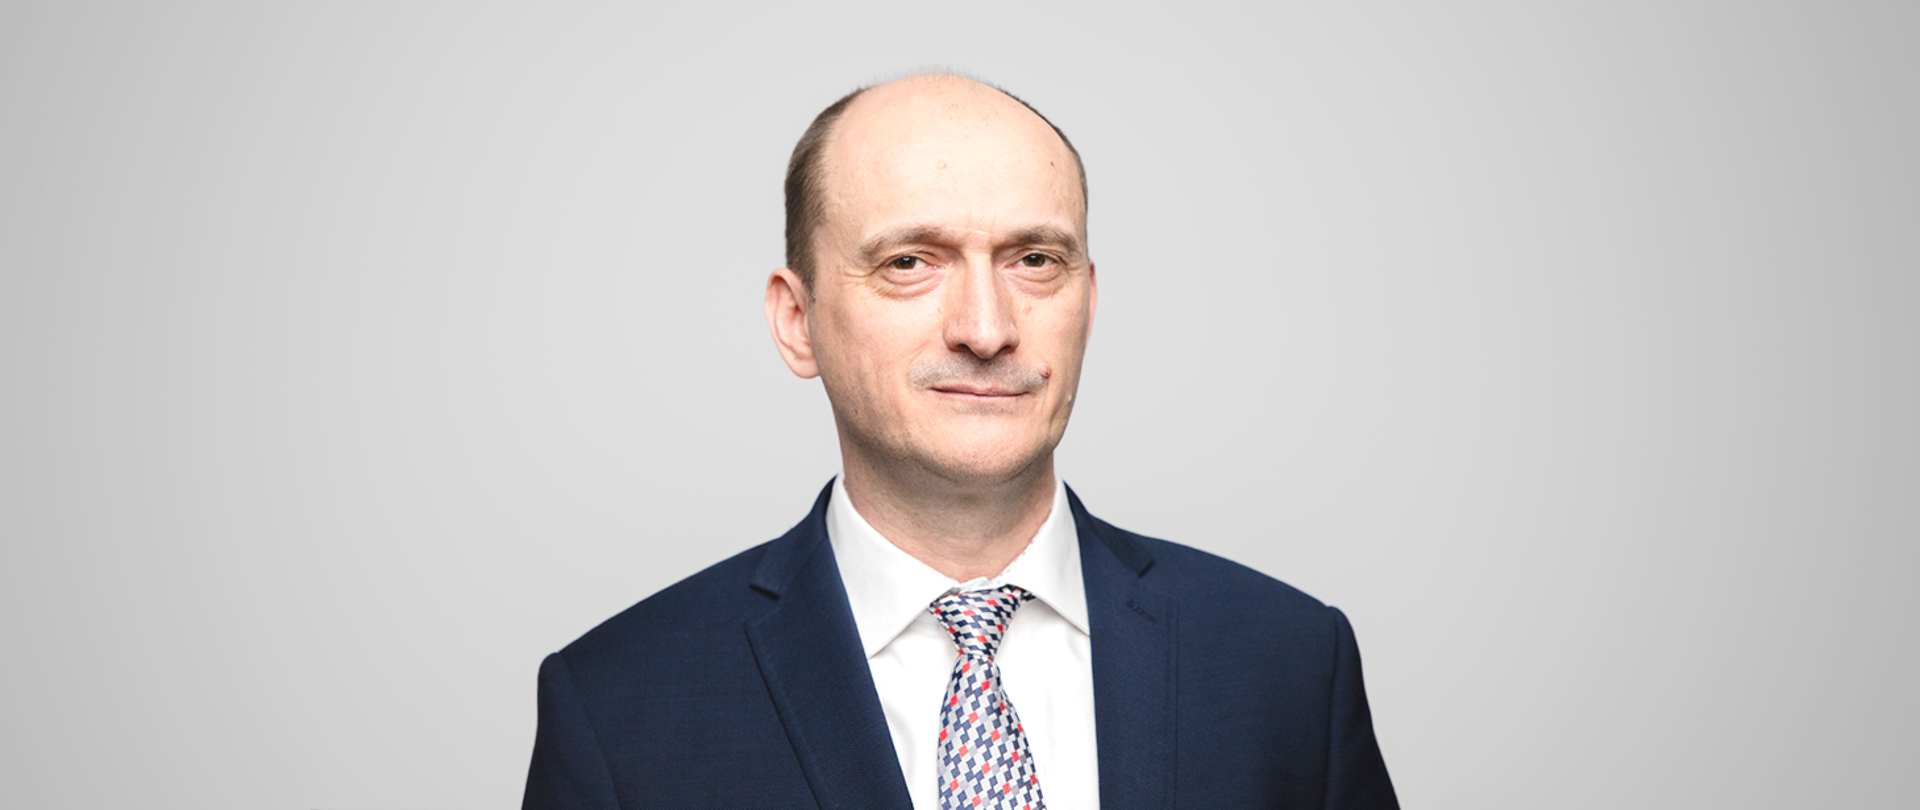 Mariusz Madejczyk - Zastępca Dyrektora NASK-PIB ds. Nowych Technologii dla Polityk Publicznych